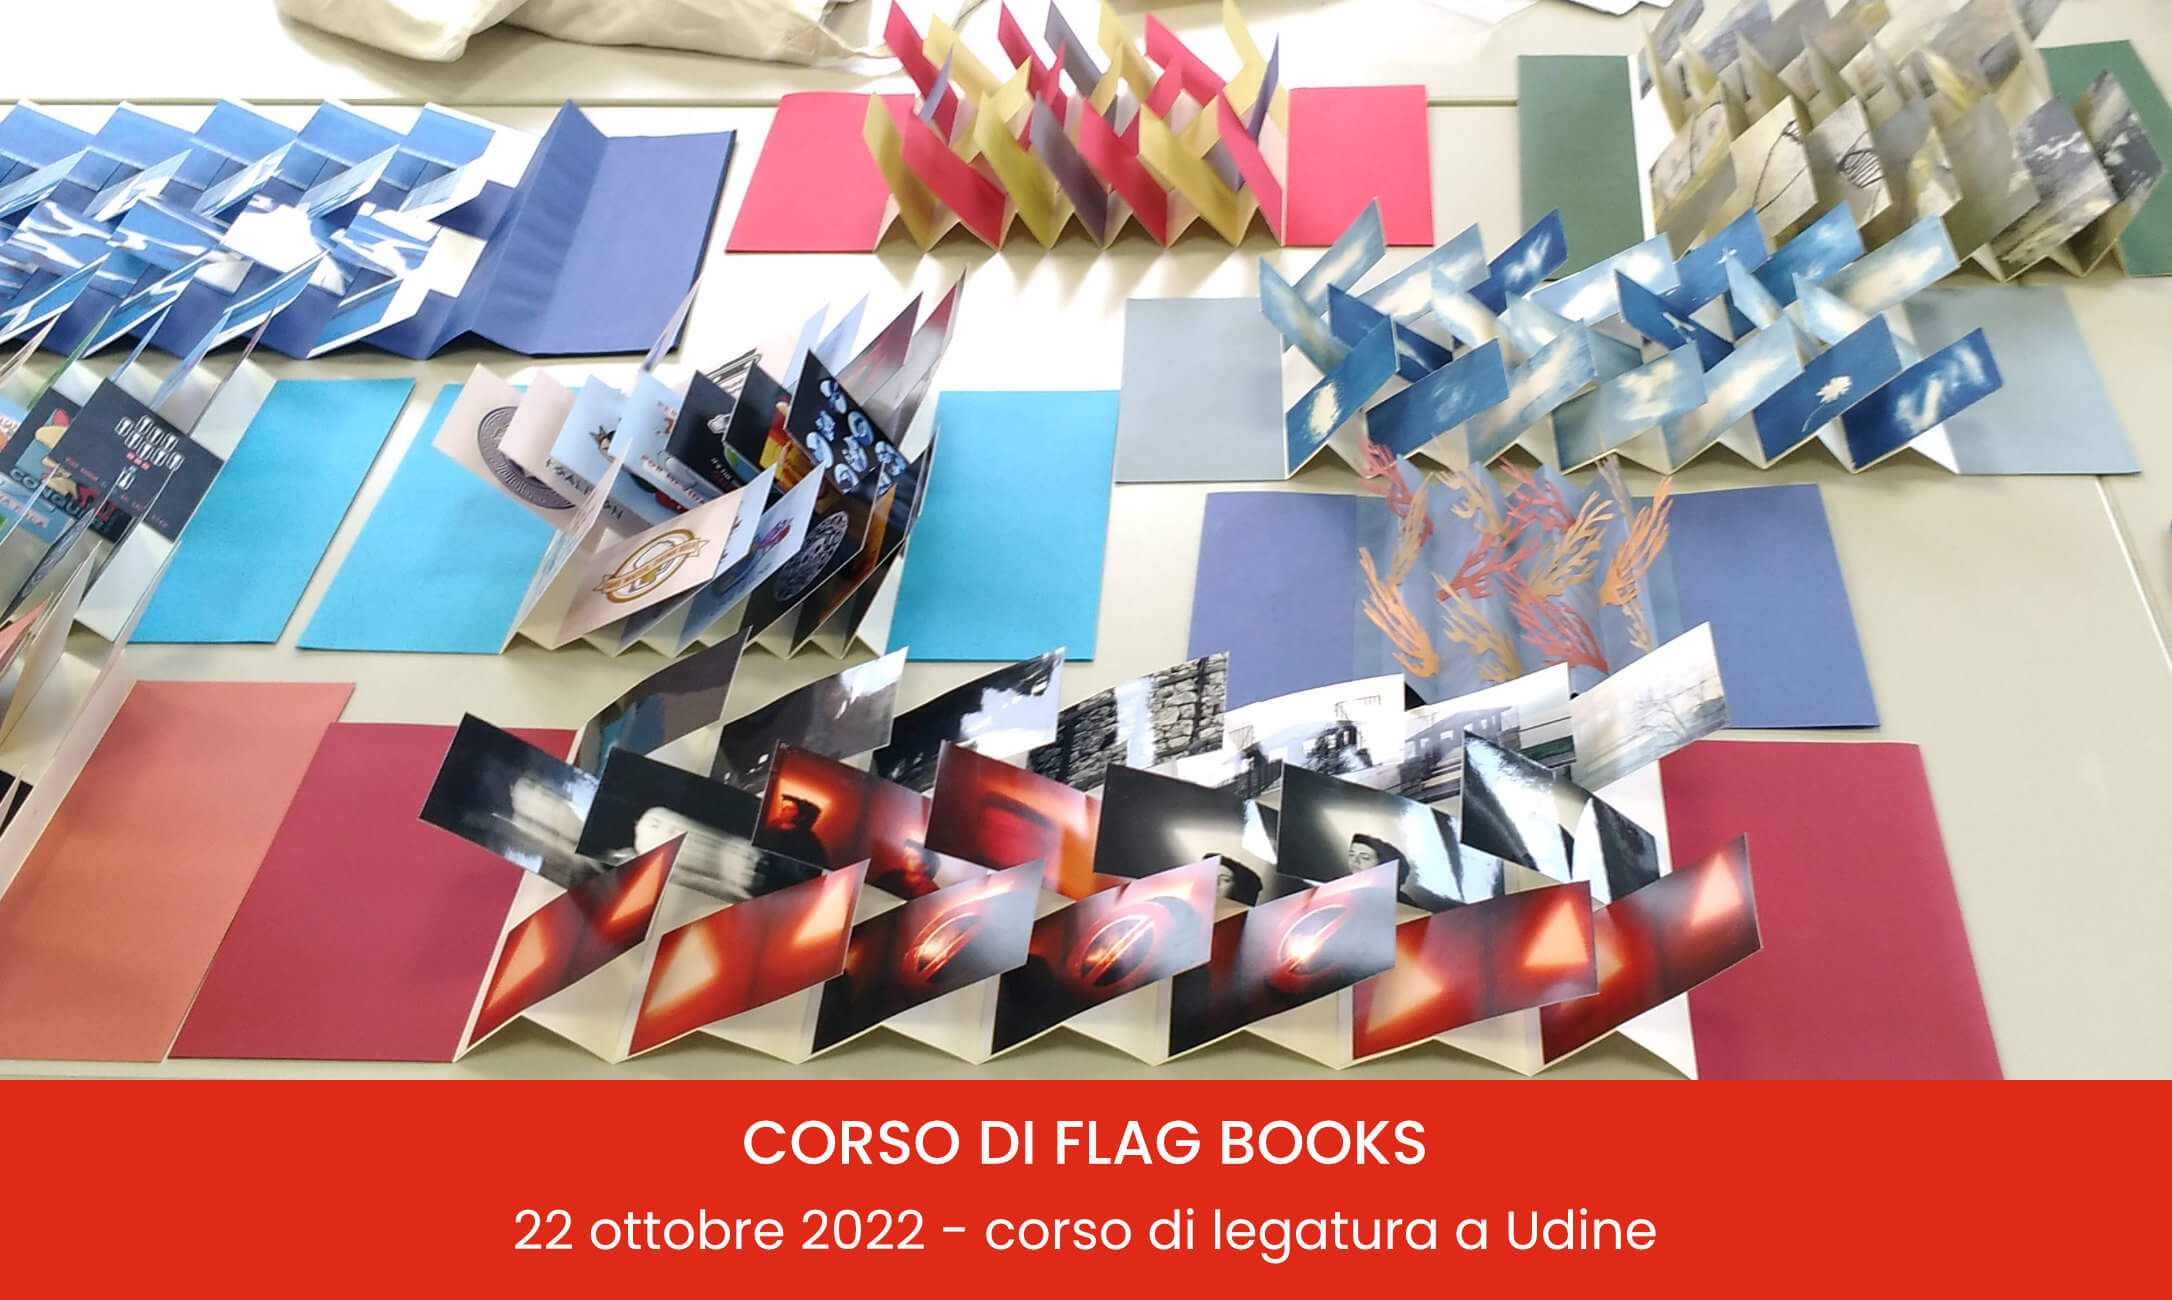 Workshop di legatoria FLAG BOOKS con la maestra artigiana Cristina Balbiano d'Aramengo